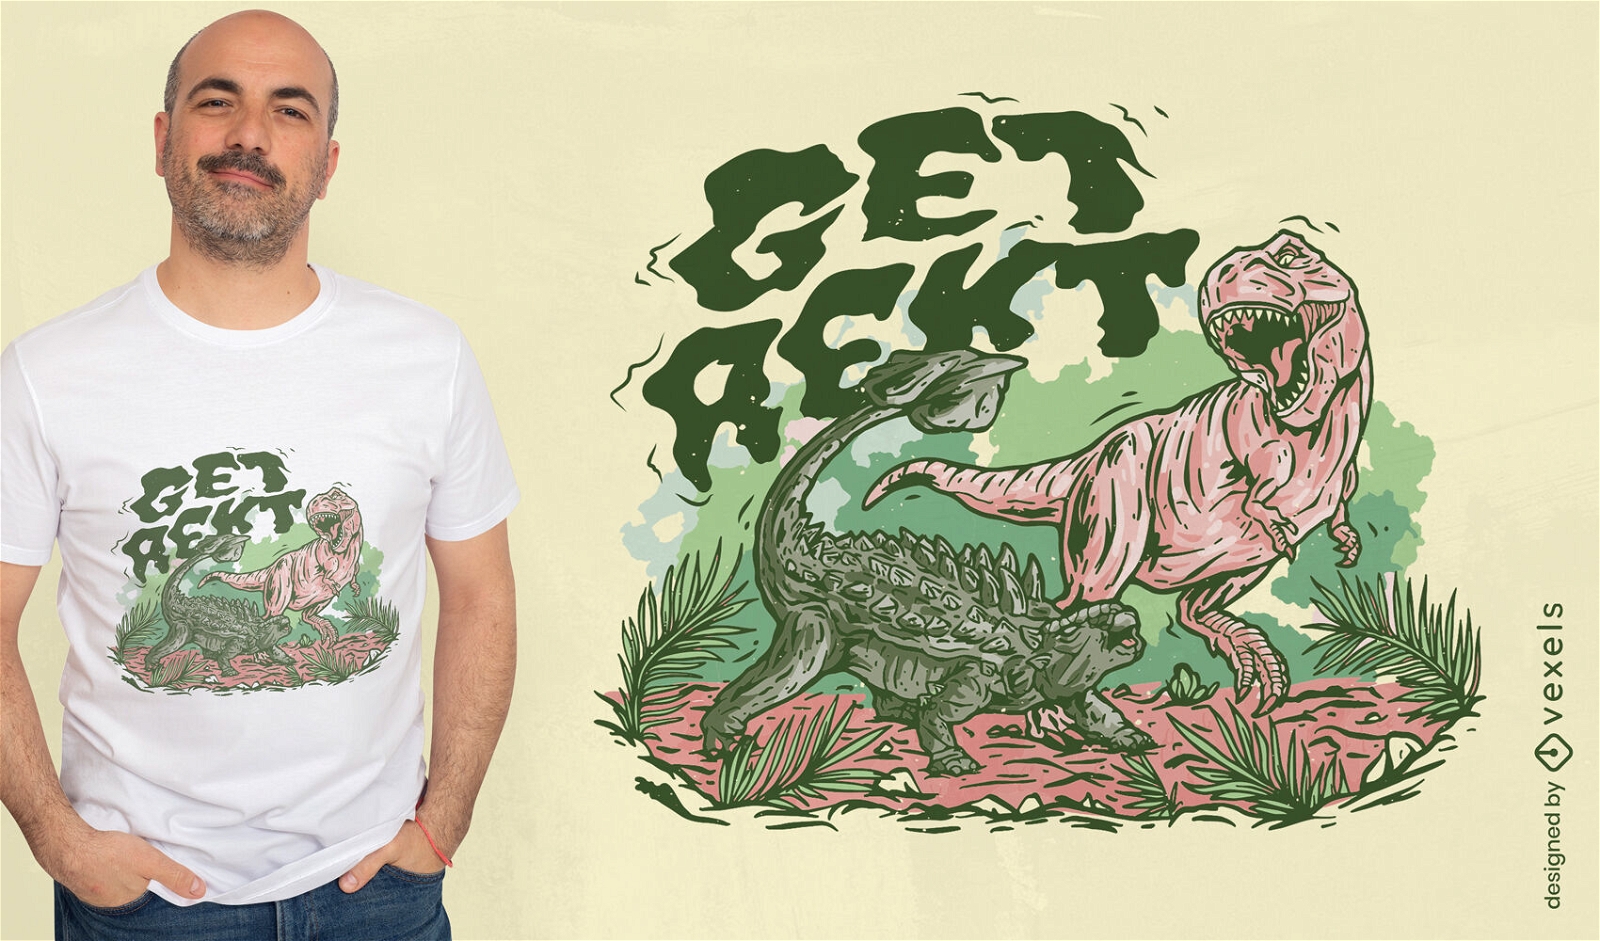 Dise?o de camiseta de lucha de dinosaurios.